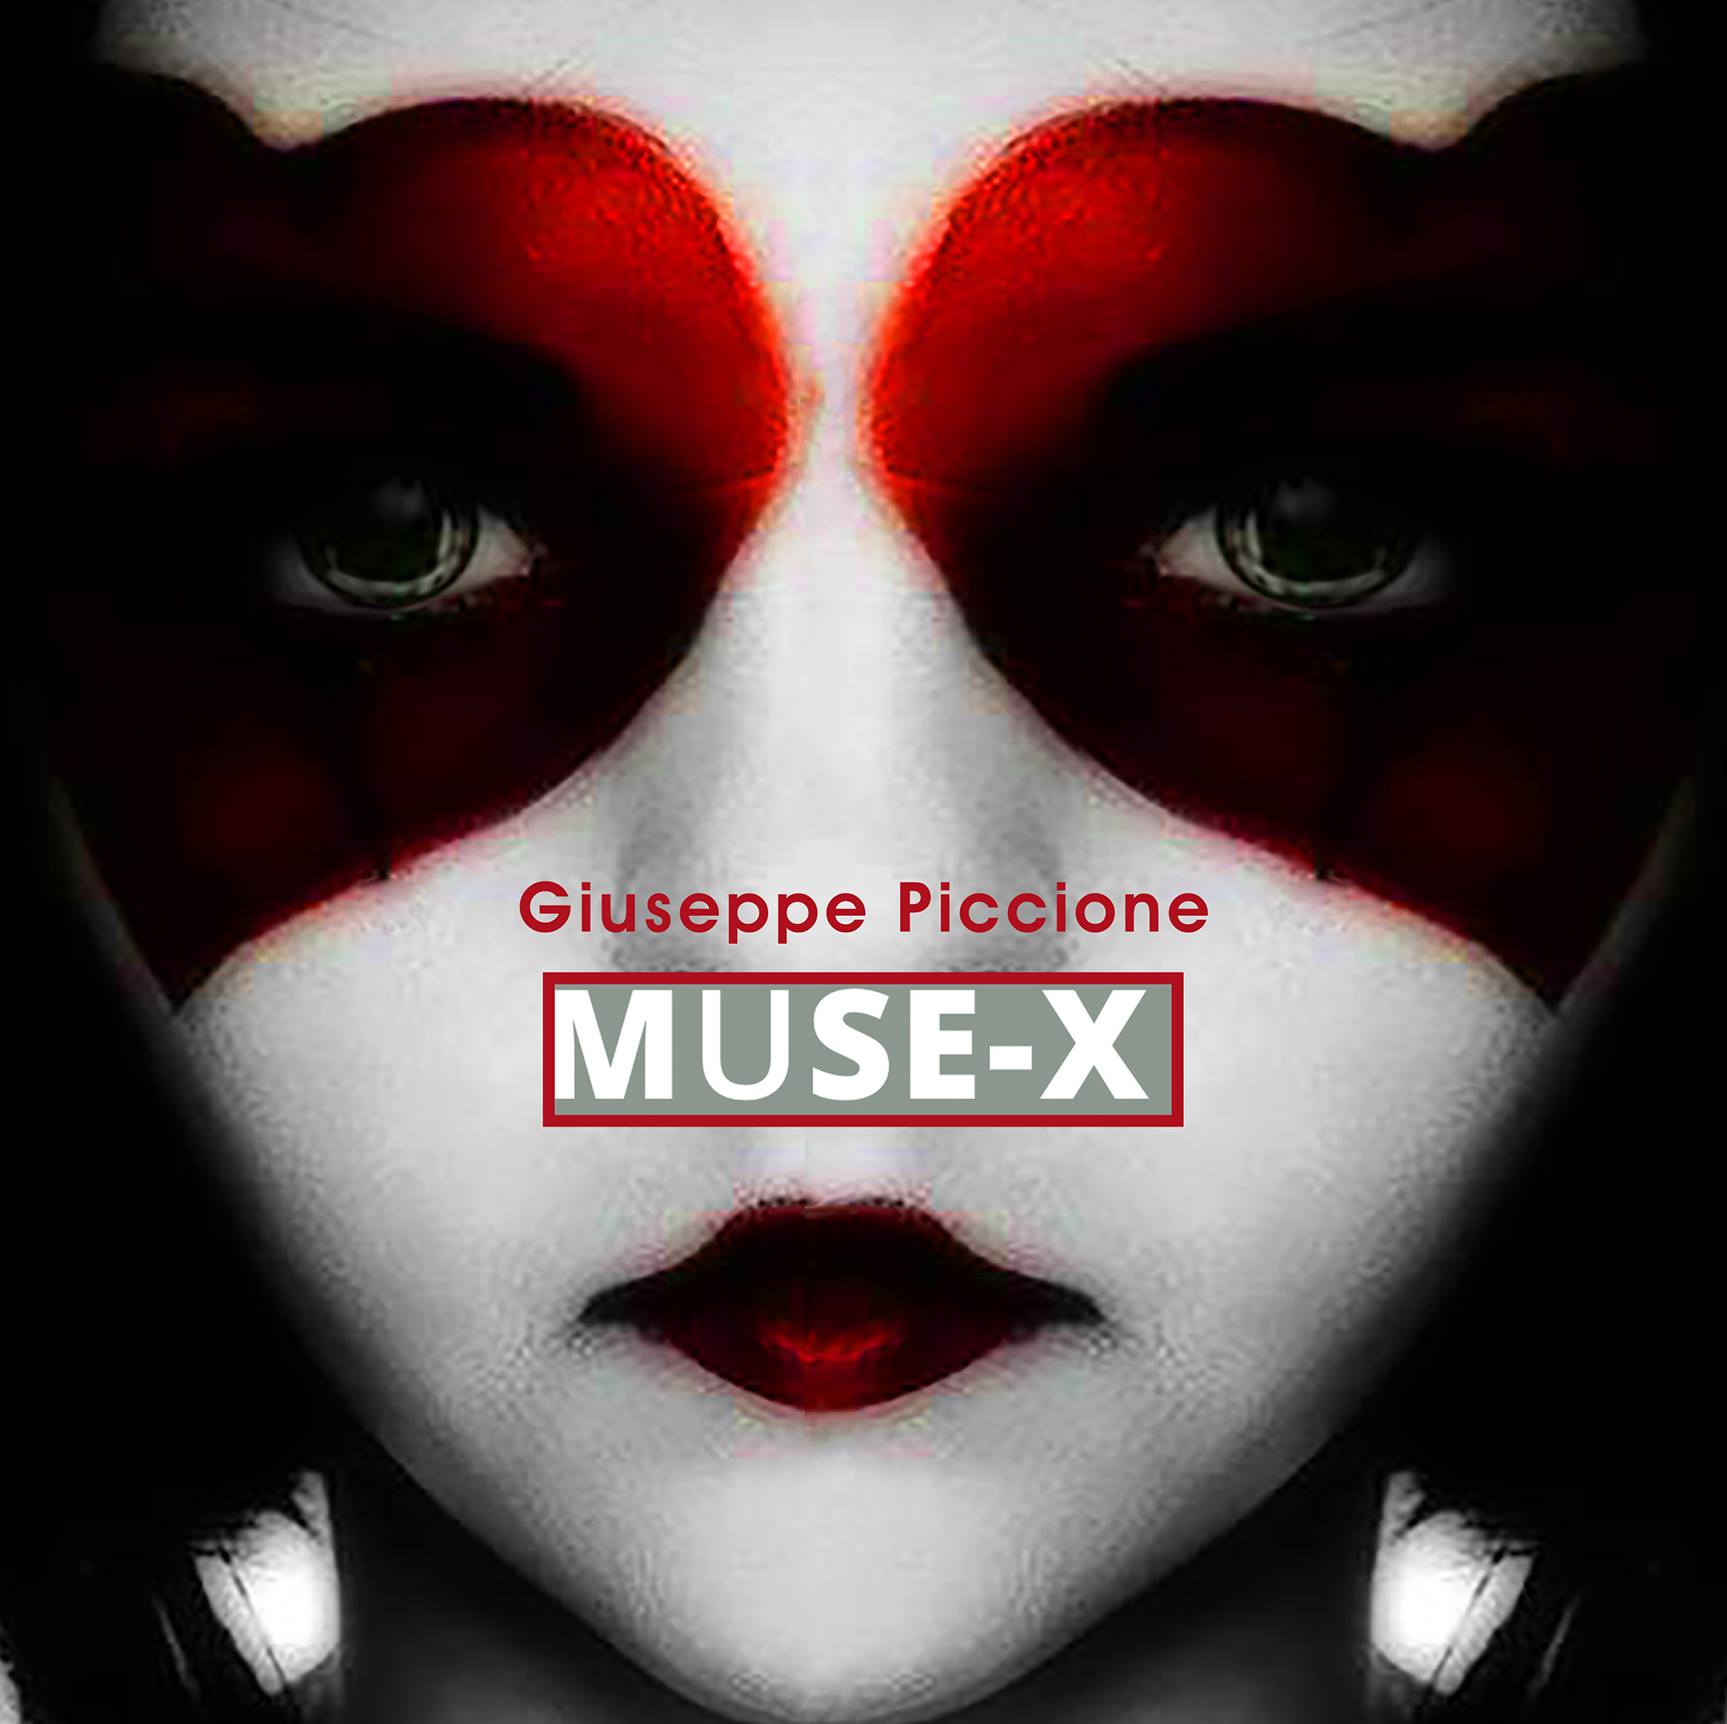 Alla galleria d’arte KoArt l’artista Giuseppe Piccione presenta l’opera “Muse X”